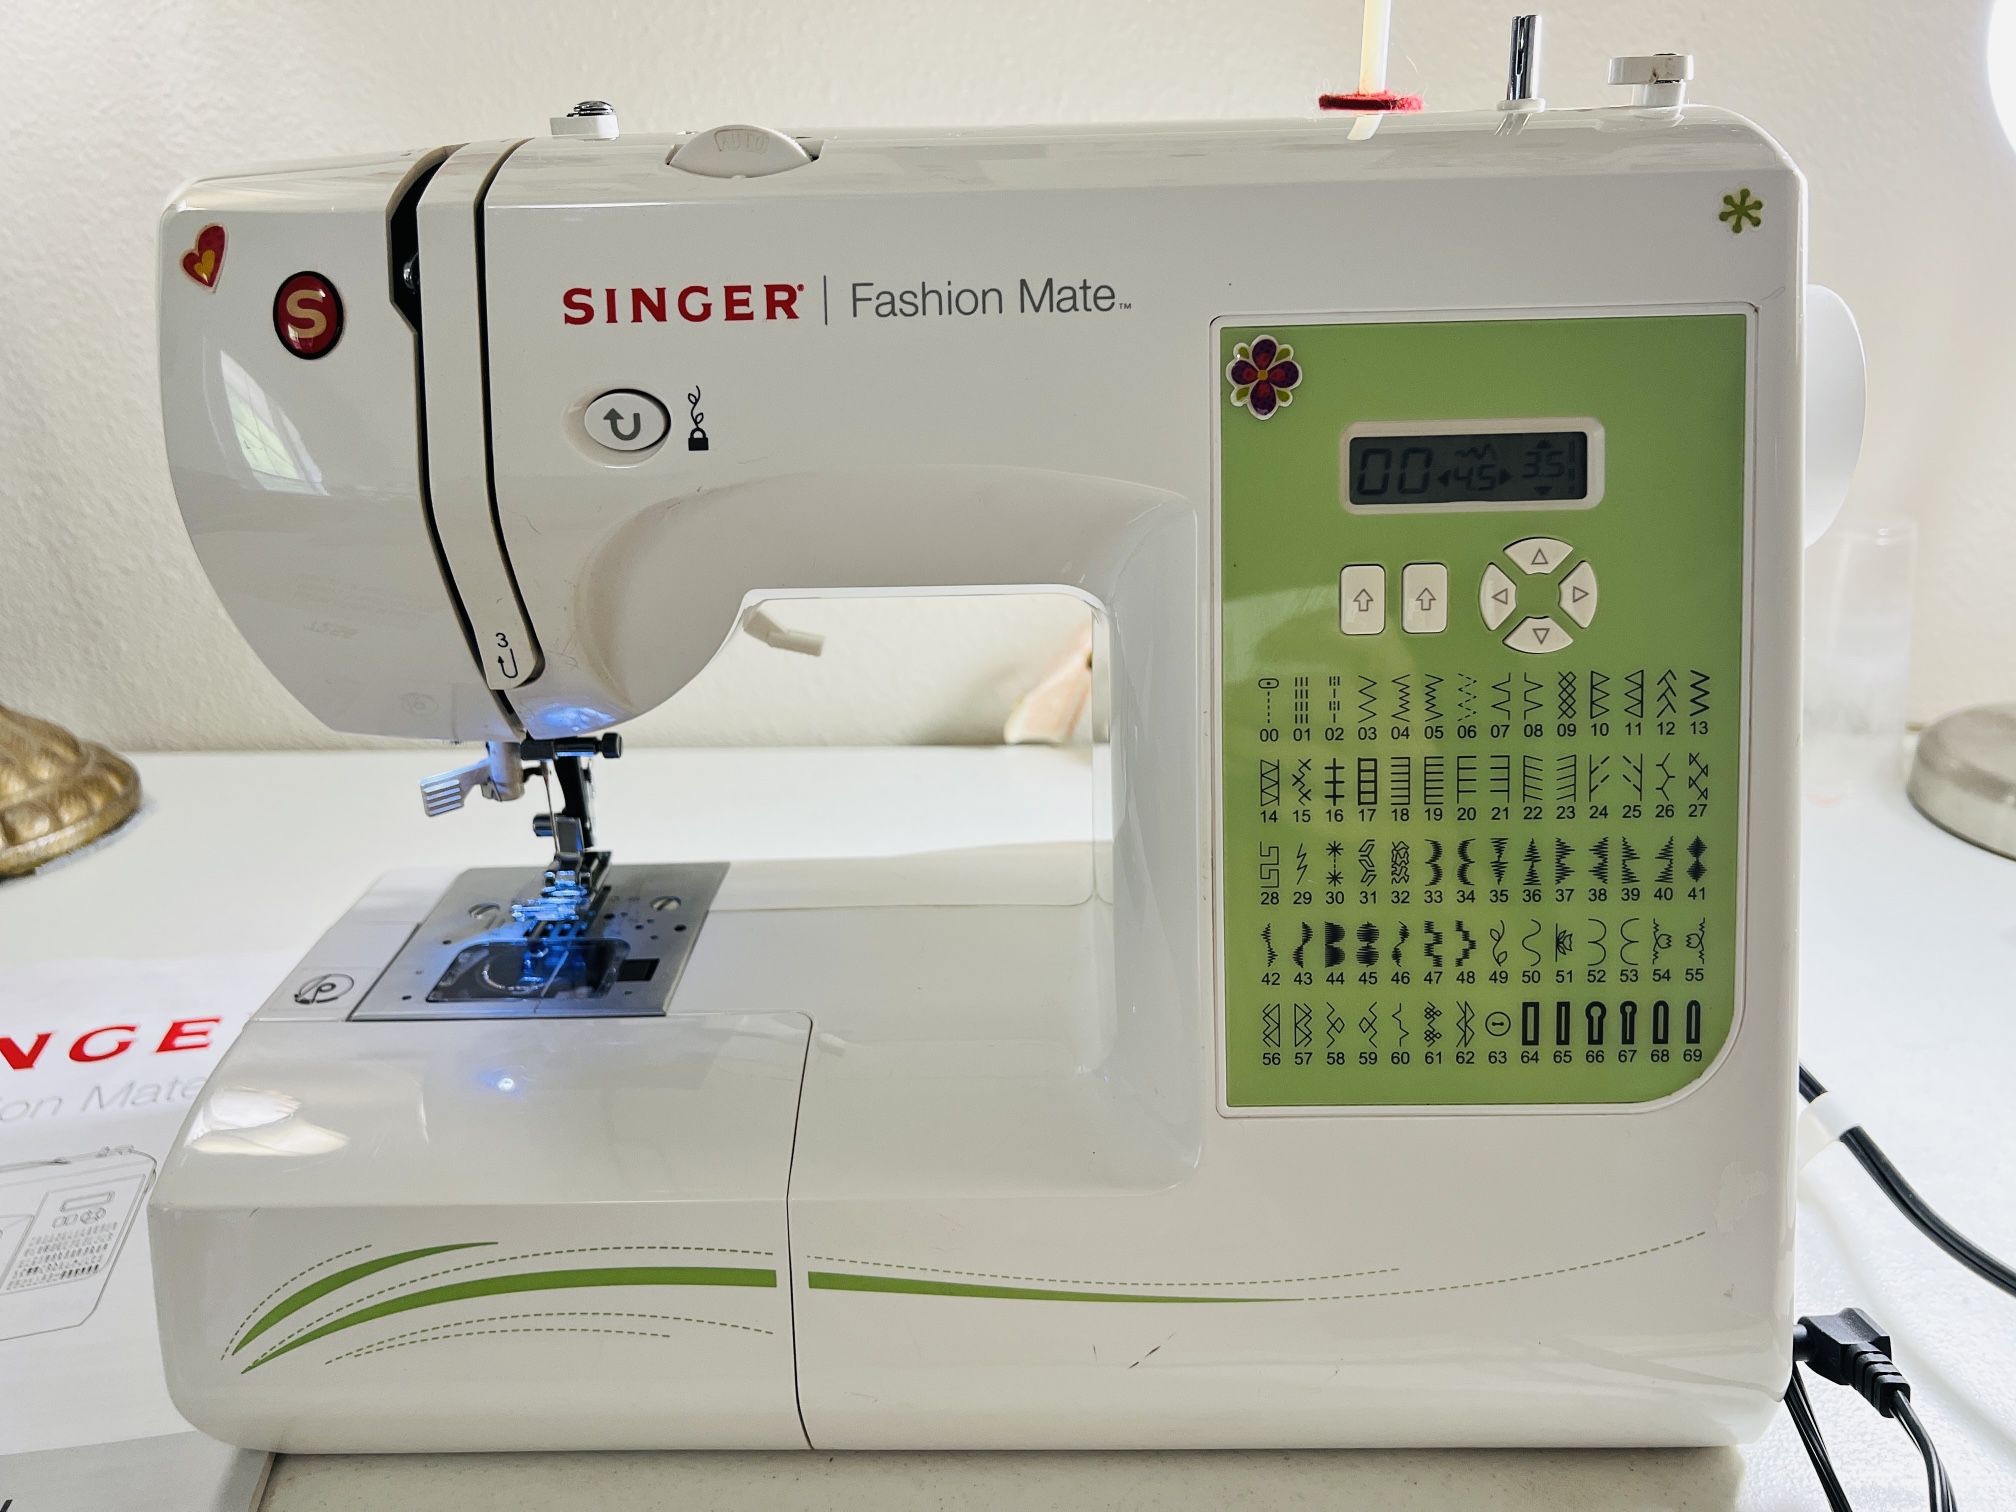 Singer Fashion Mate Sewing Machine